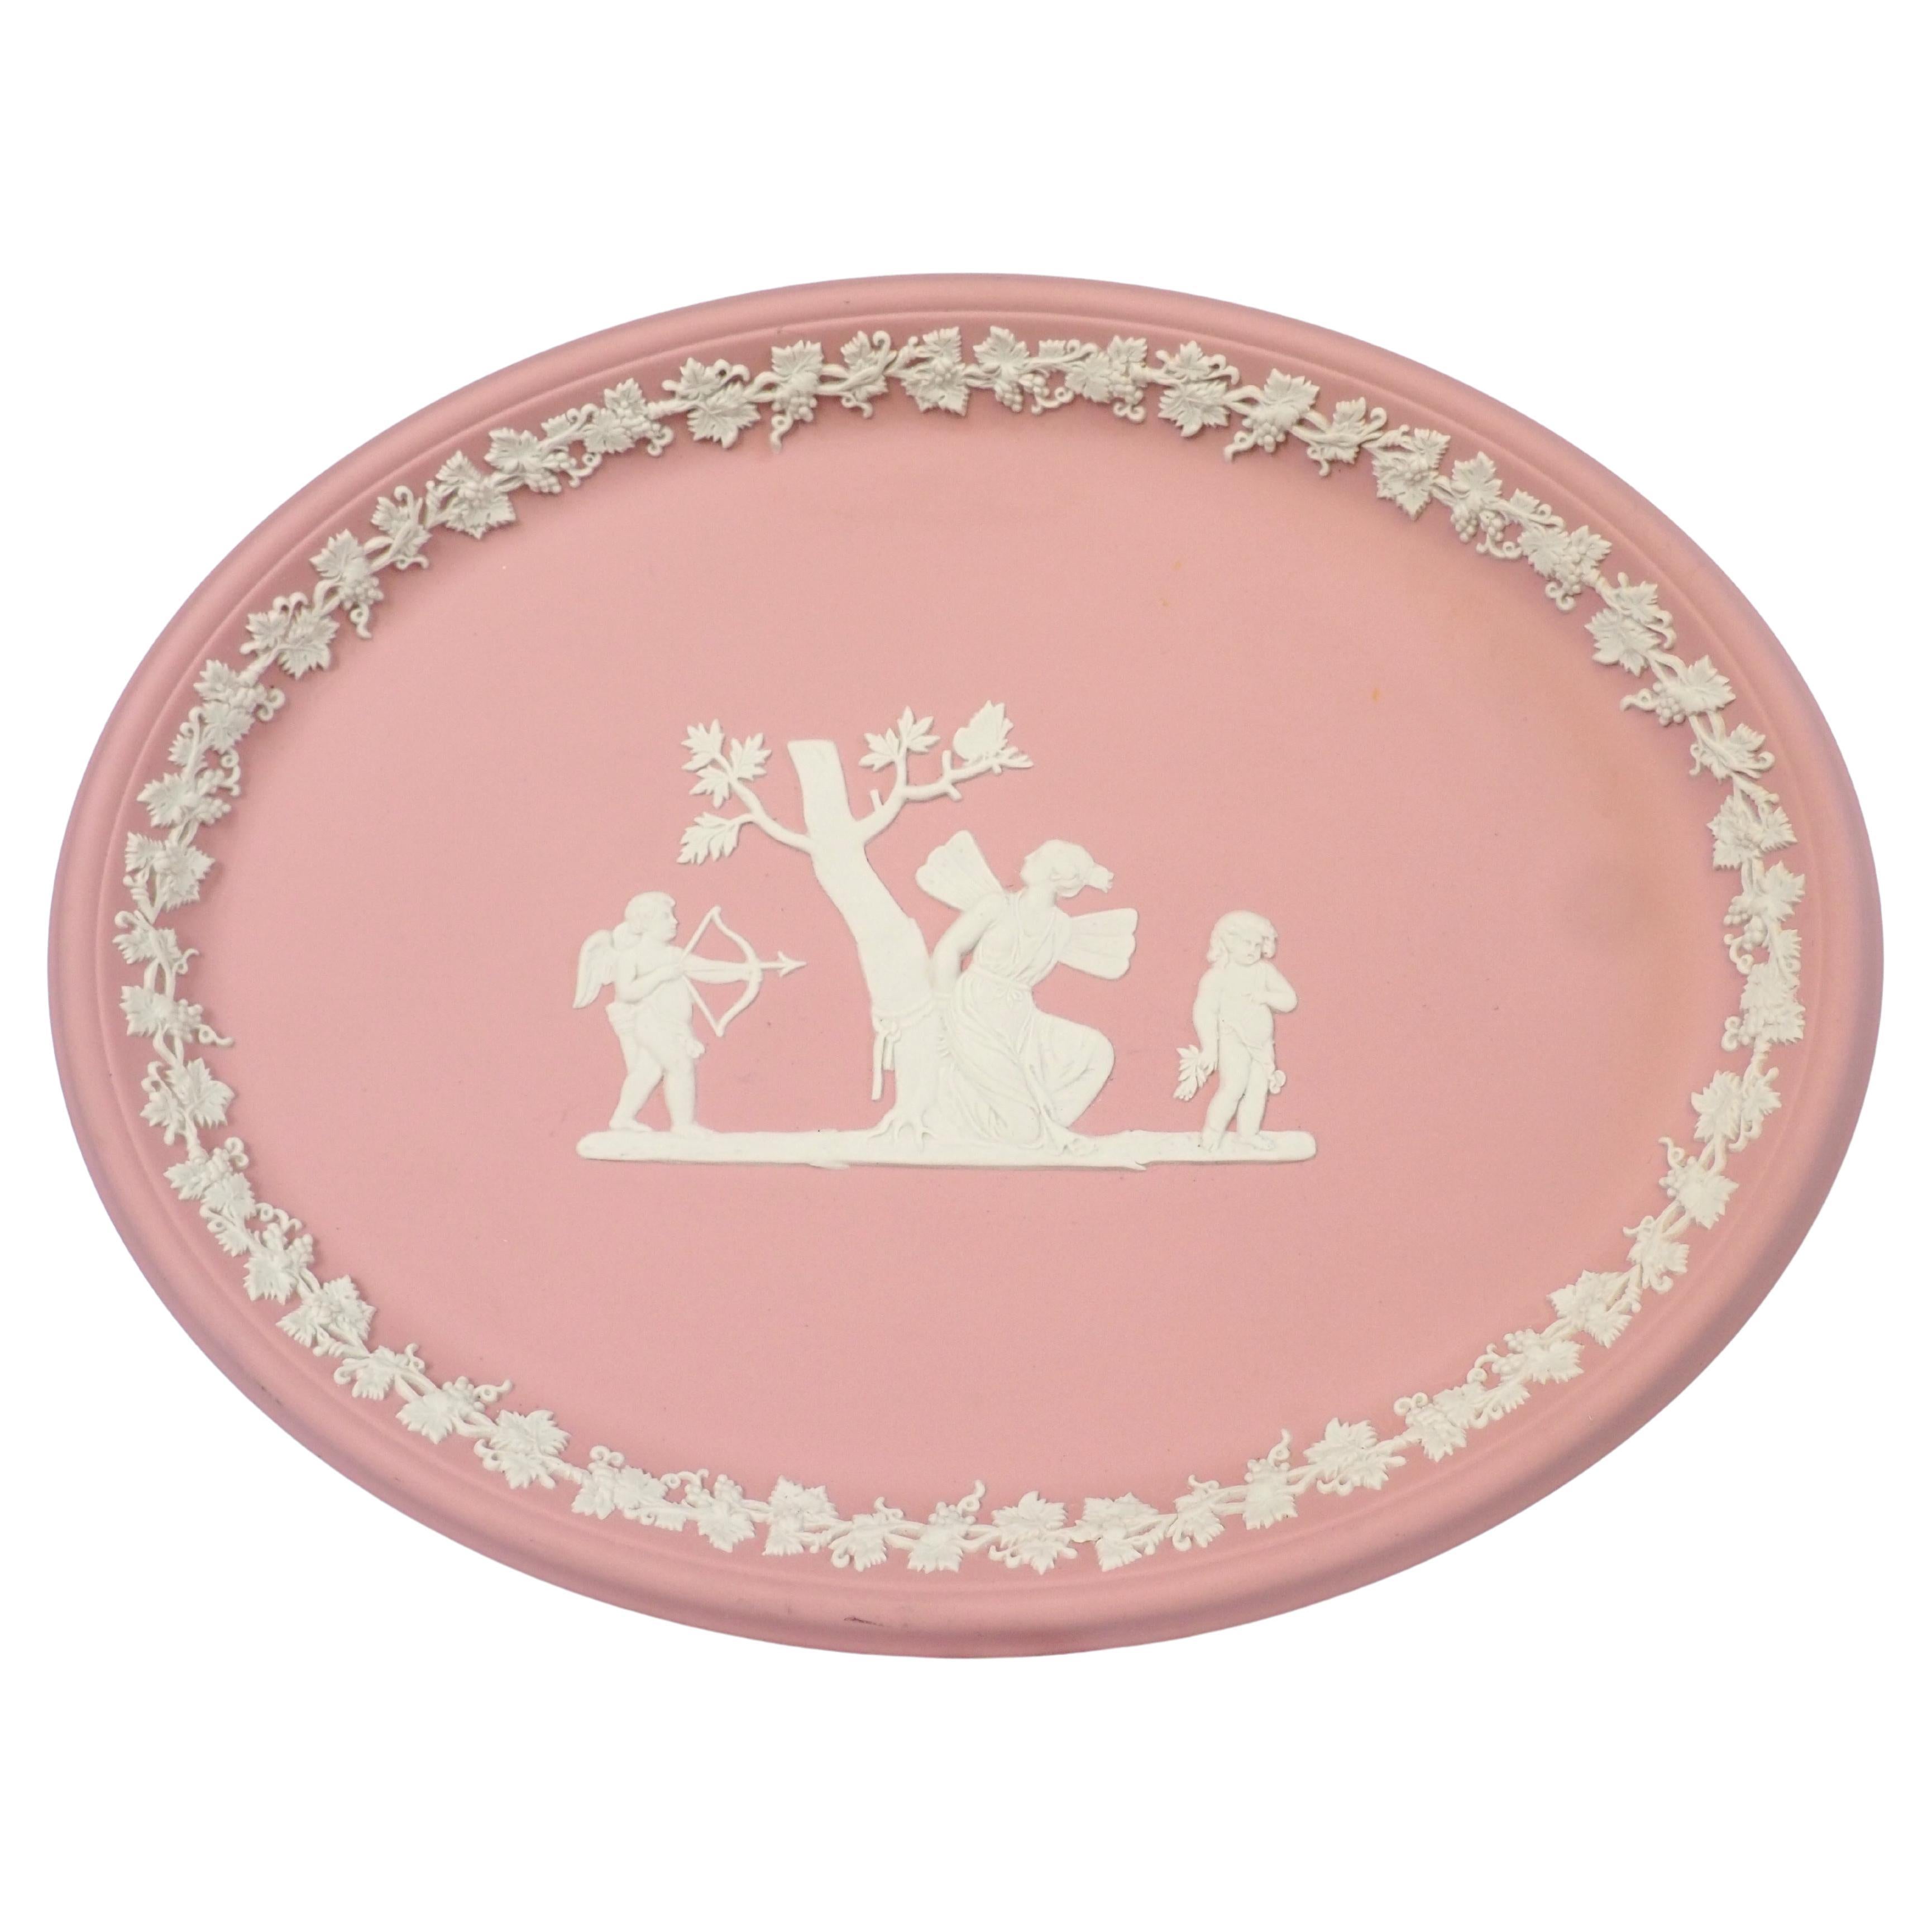 Wedgwood pink and white jasperware tray